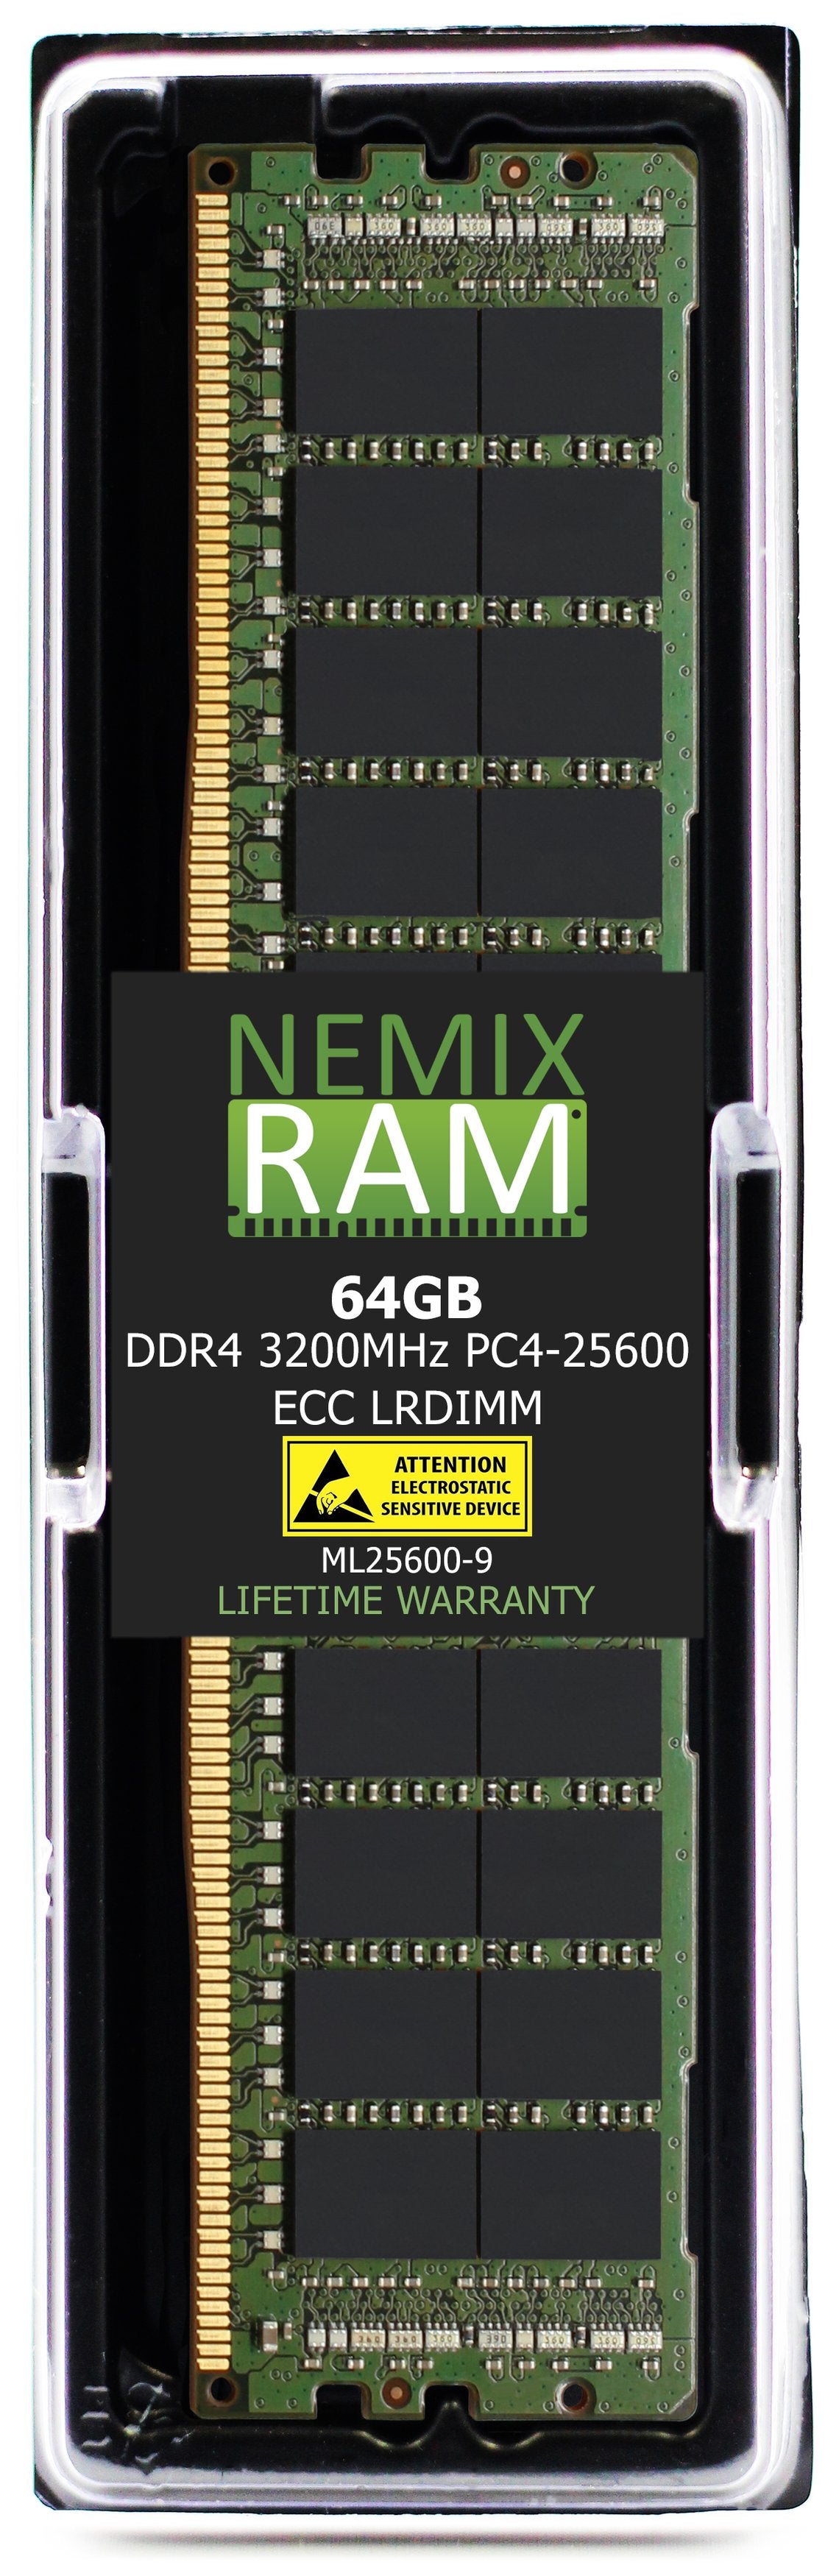 Hynix HMAA8GL7CPR4N-XN 64GB DDR4 3200MHZ PC4-25600 LRDIMM Compatible Memory Module